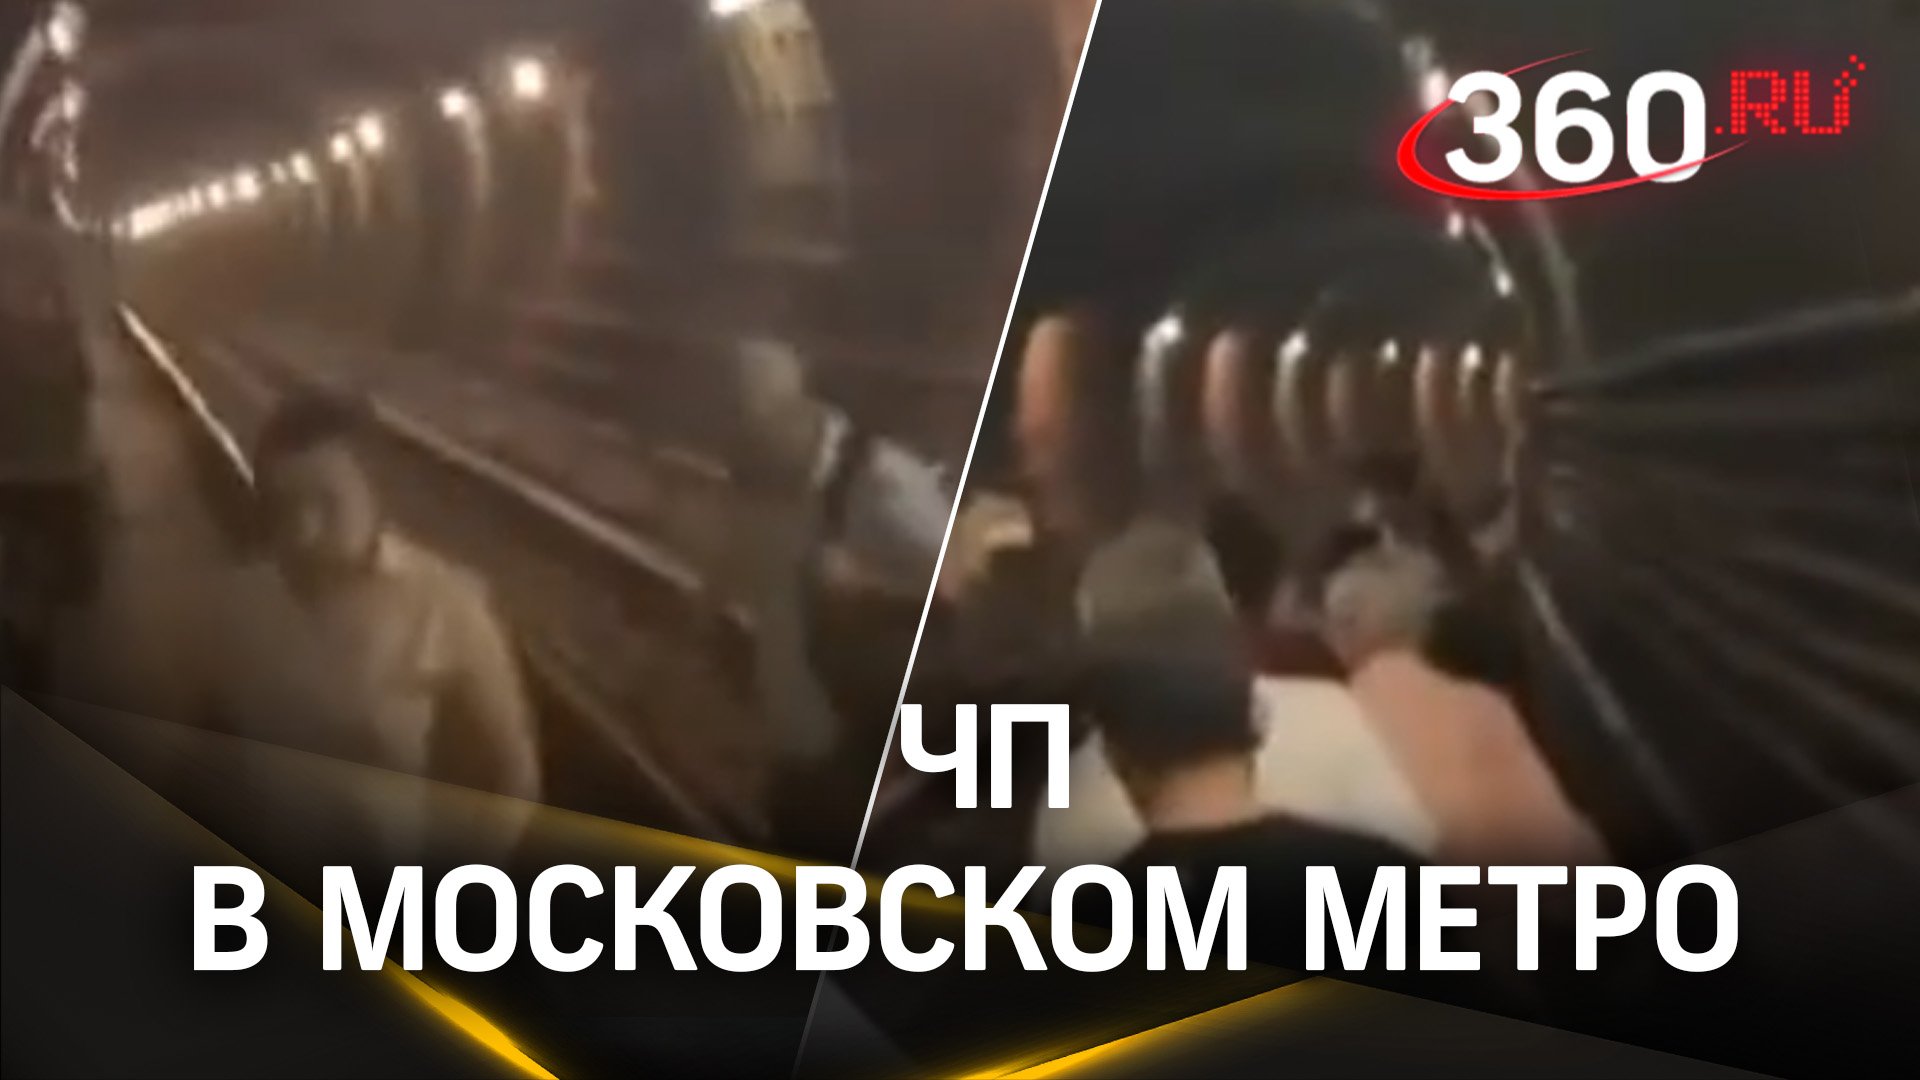 Движение на Сокольнической линии метро в Москве полностью остановлено